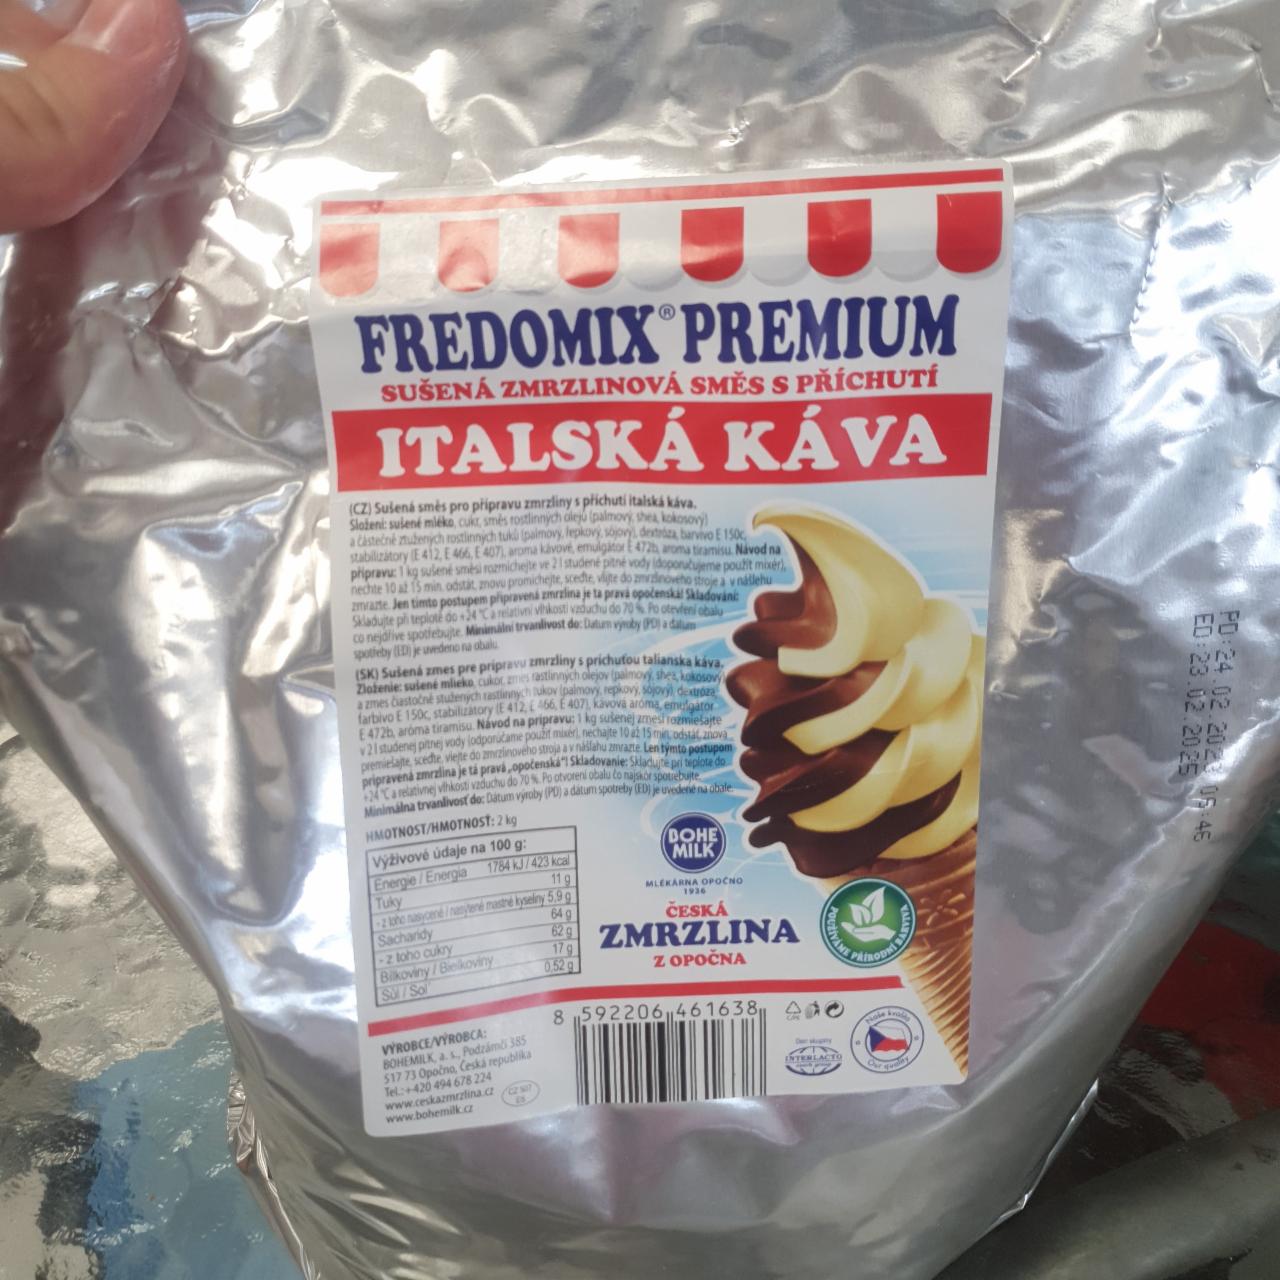 Fotografie - Italská káva fredomix premium Česká zmrzlina z Opočna